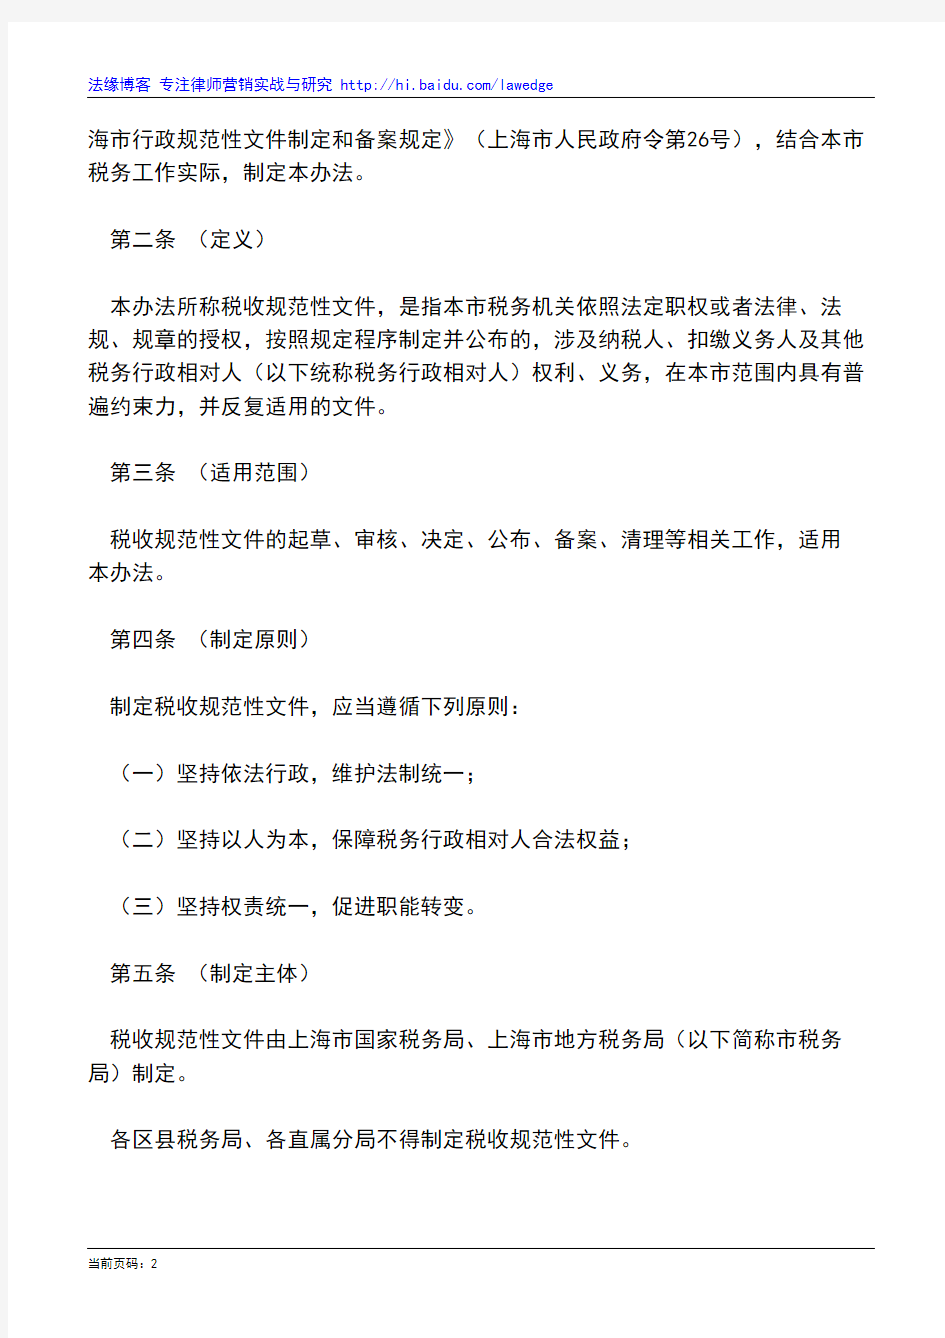 上海市国家税务局、市地方税务局关于印发《上海市税收规范性文件制定管理办法》的通知